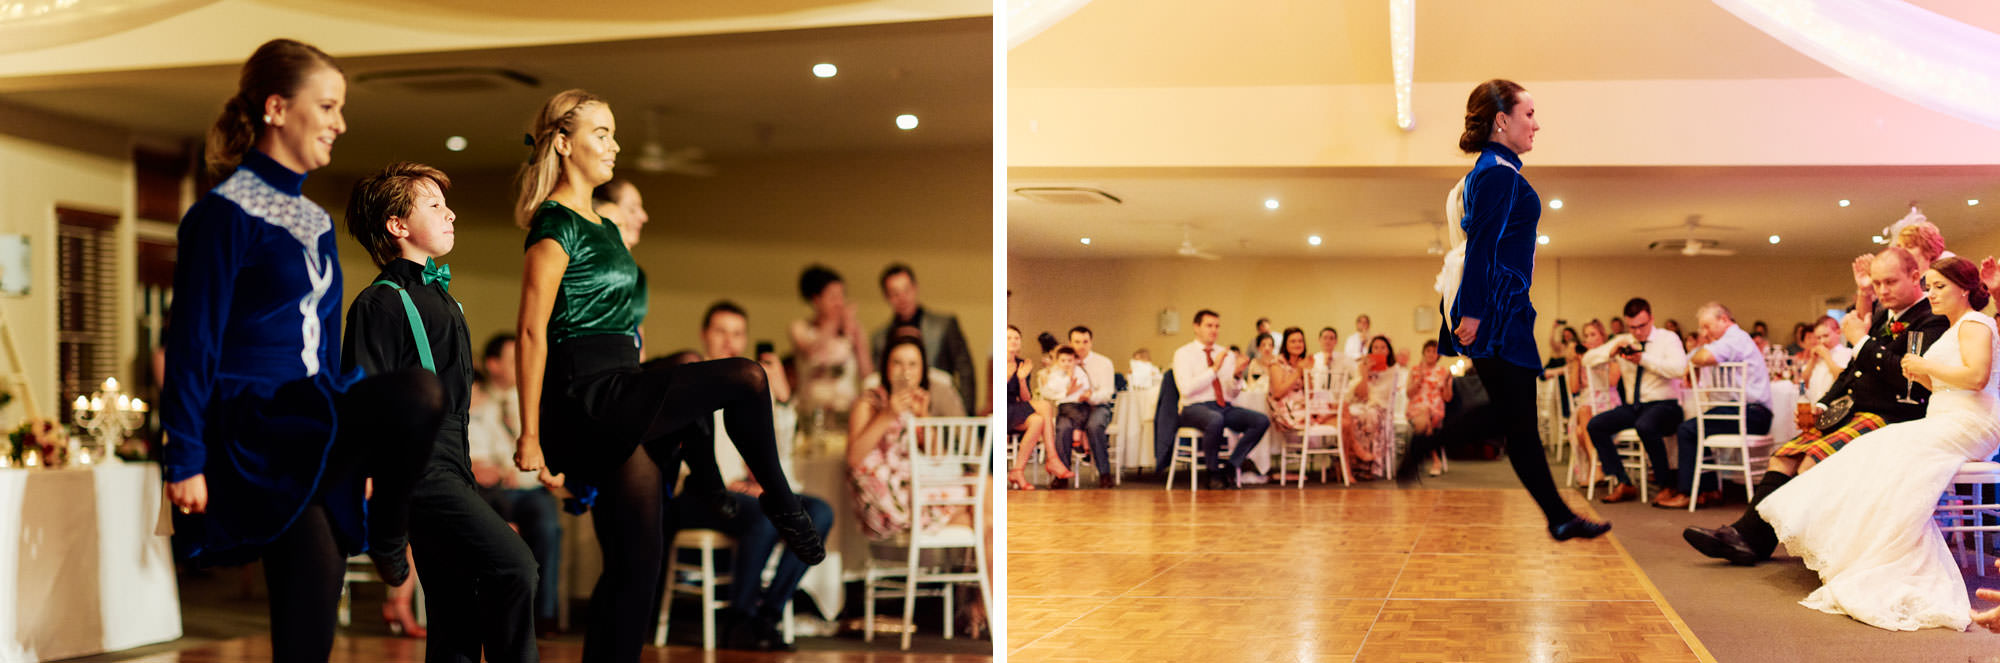 Irish dancing during wedding reception